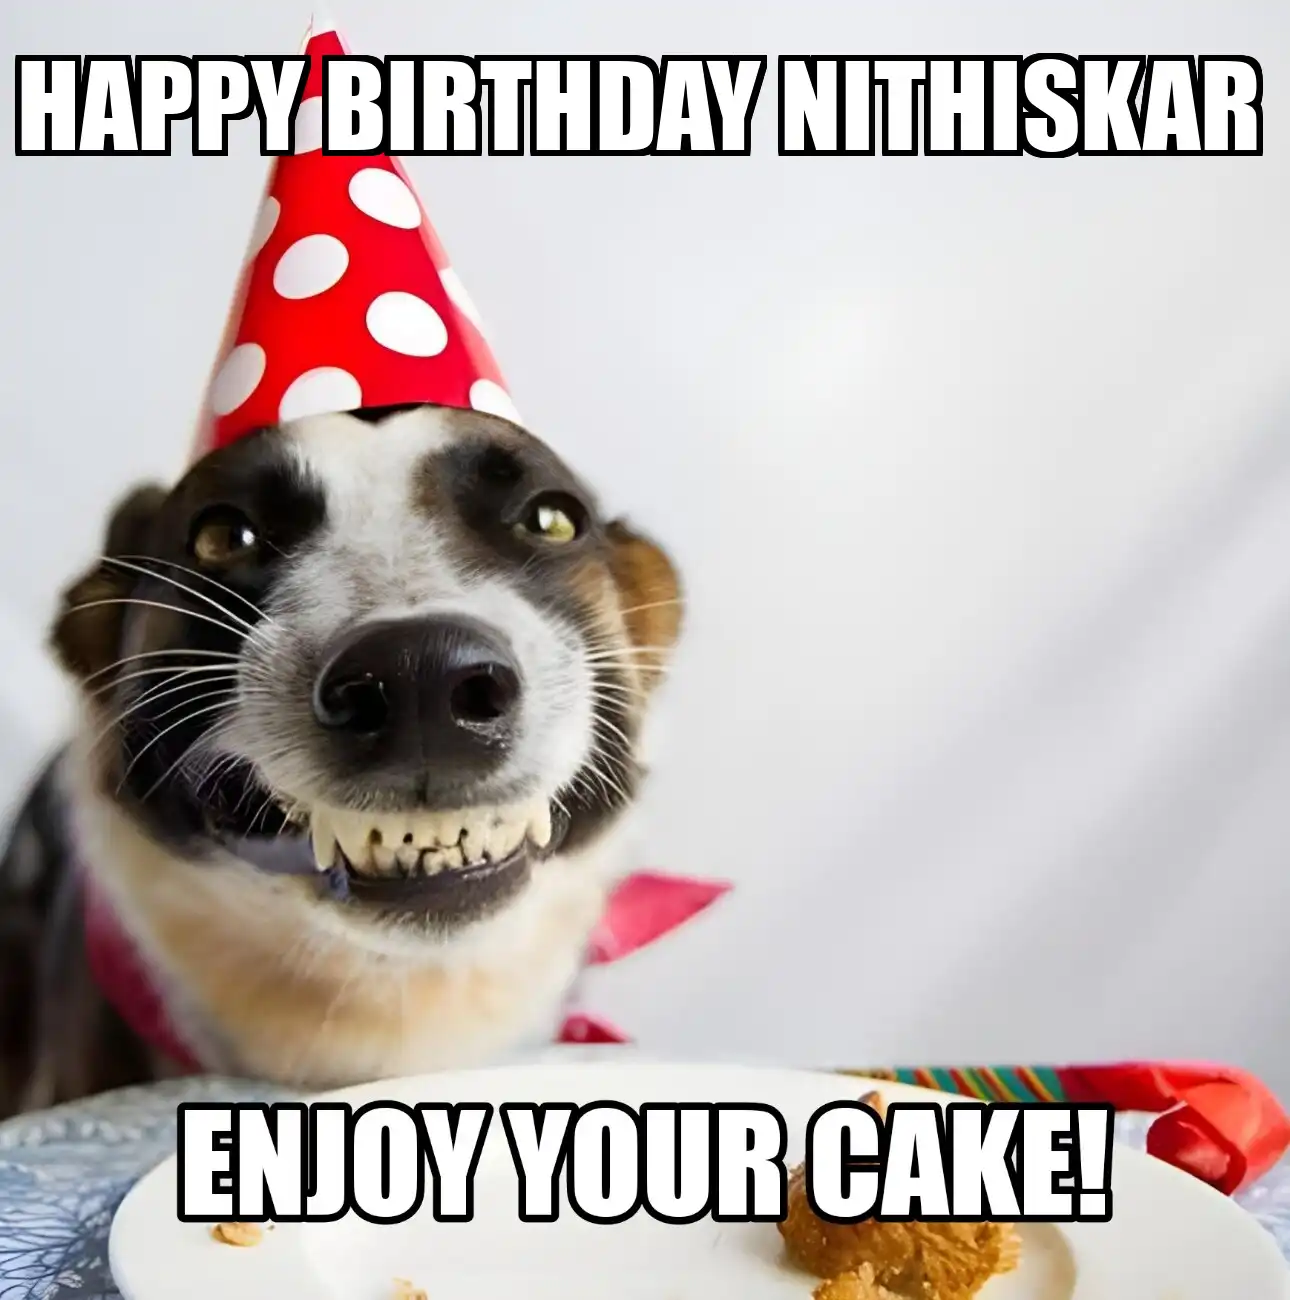 Happy Birthday Nithiskar Enjoy Your Cake Dog Meme